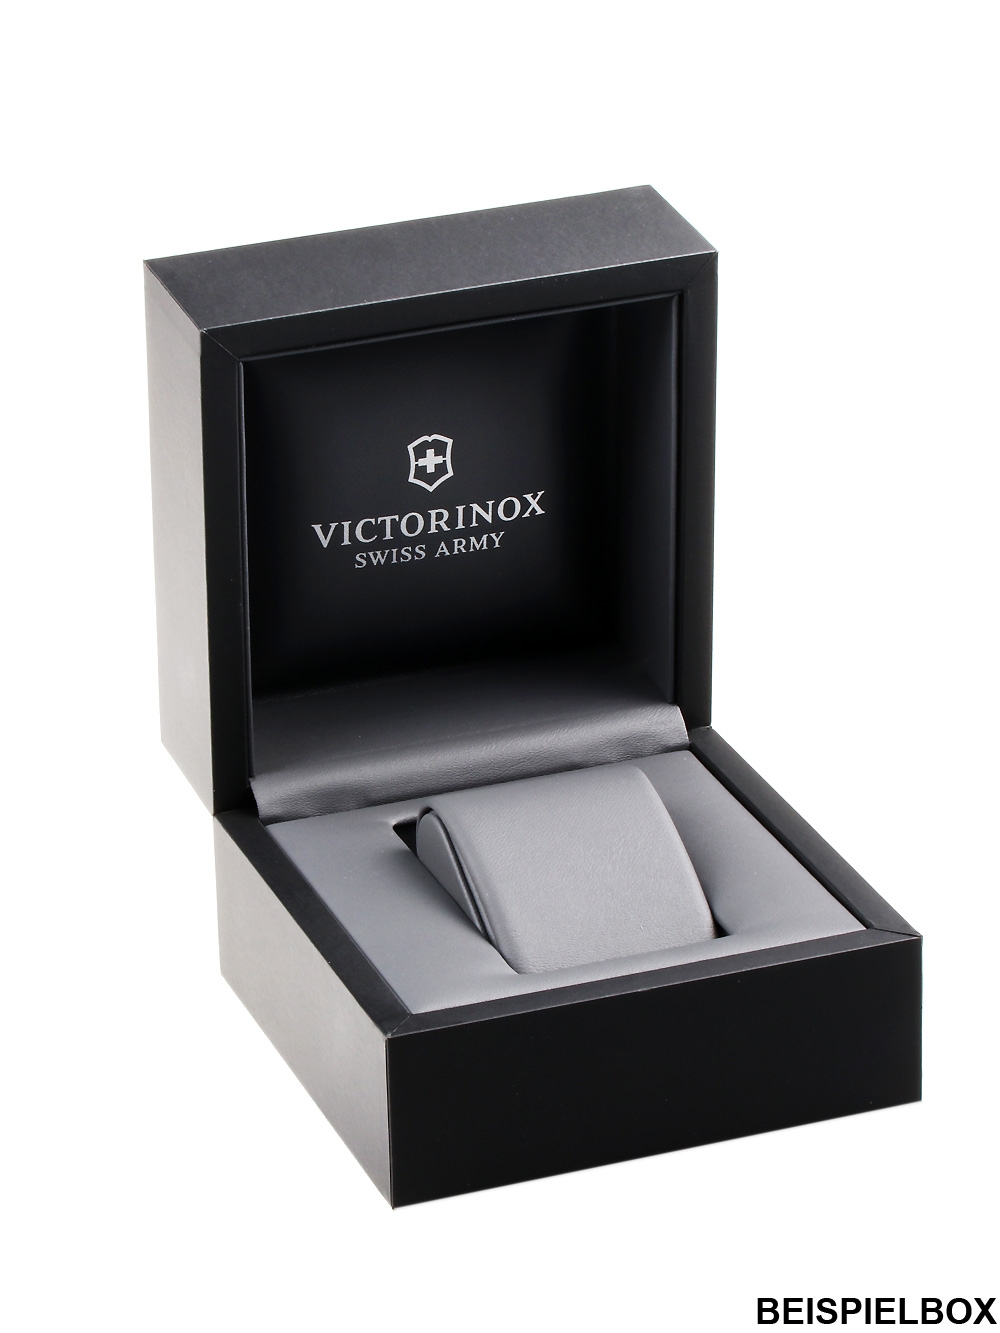 Zegarek męski Victorinox 241789 złoty